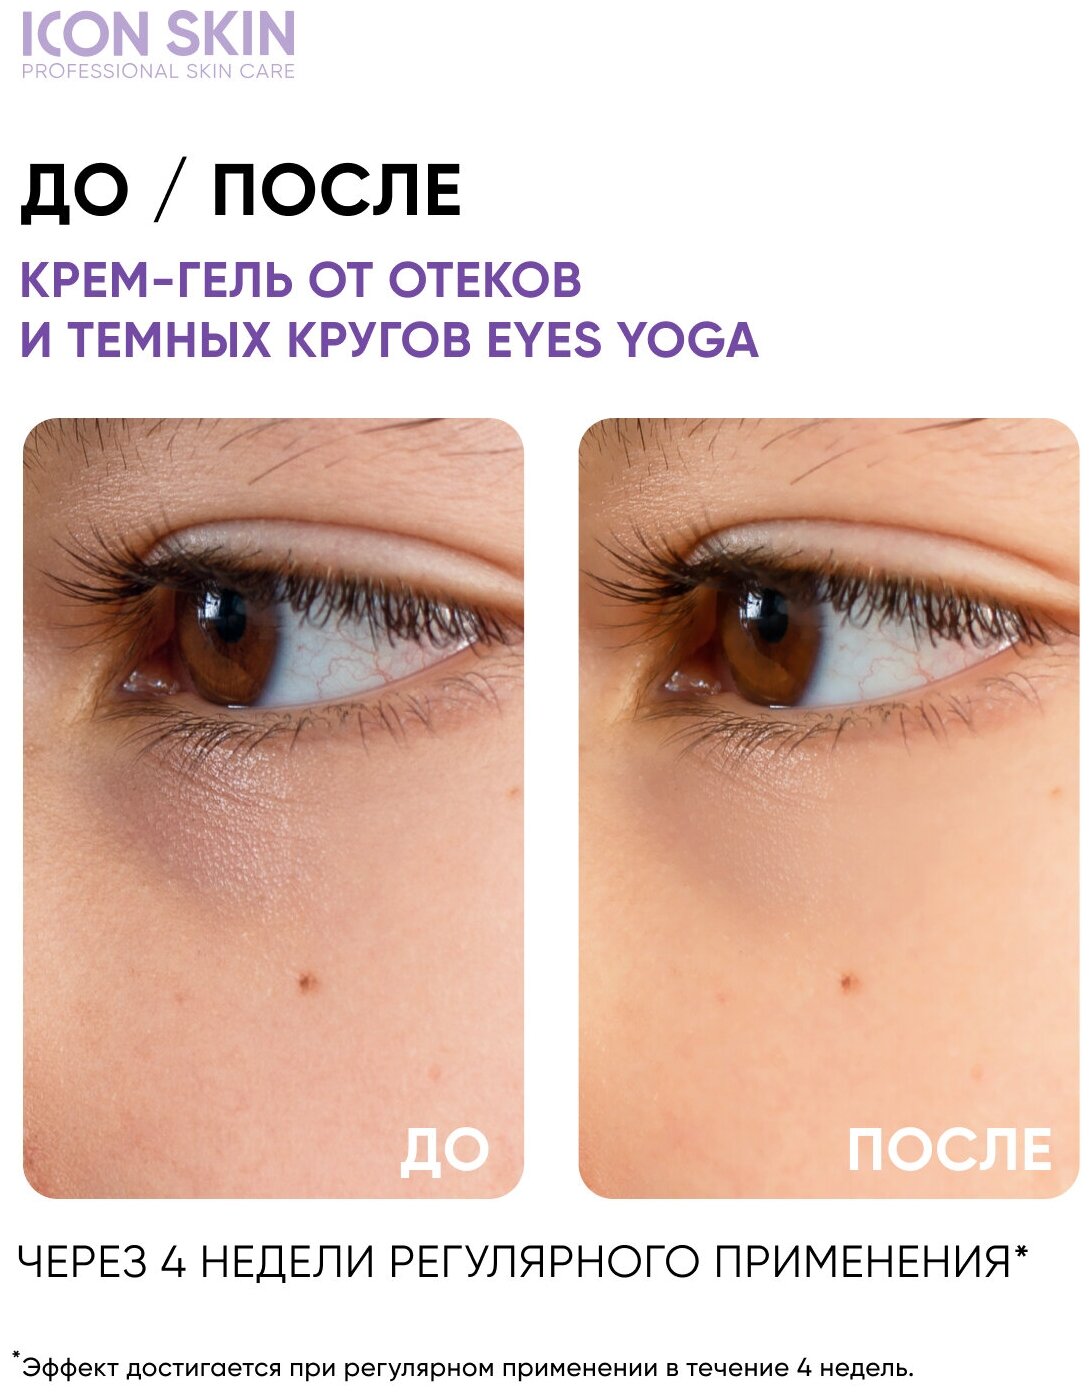 ICON SKIN / Крем-сыворотка для кожи вокруг глаз Eyes Yoga от отёков с гиалуроновой кислотой, 15 мл